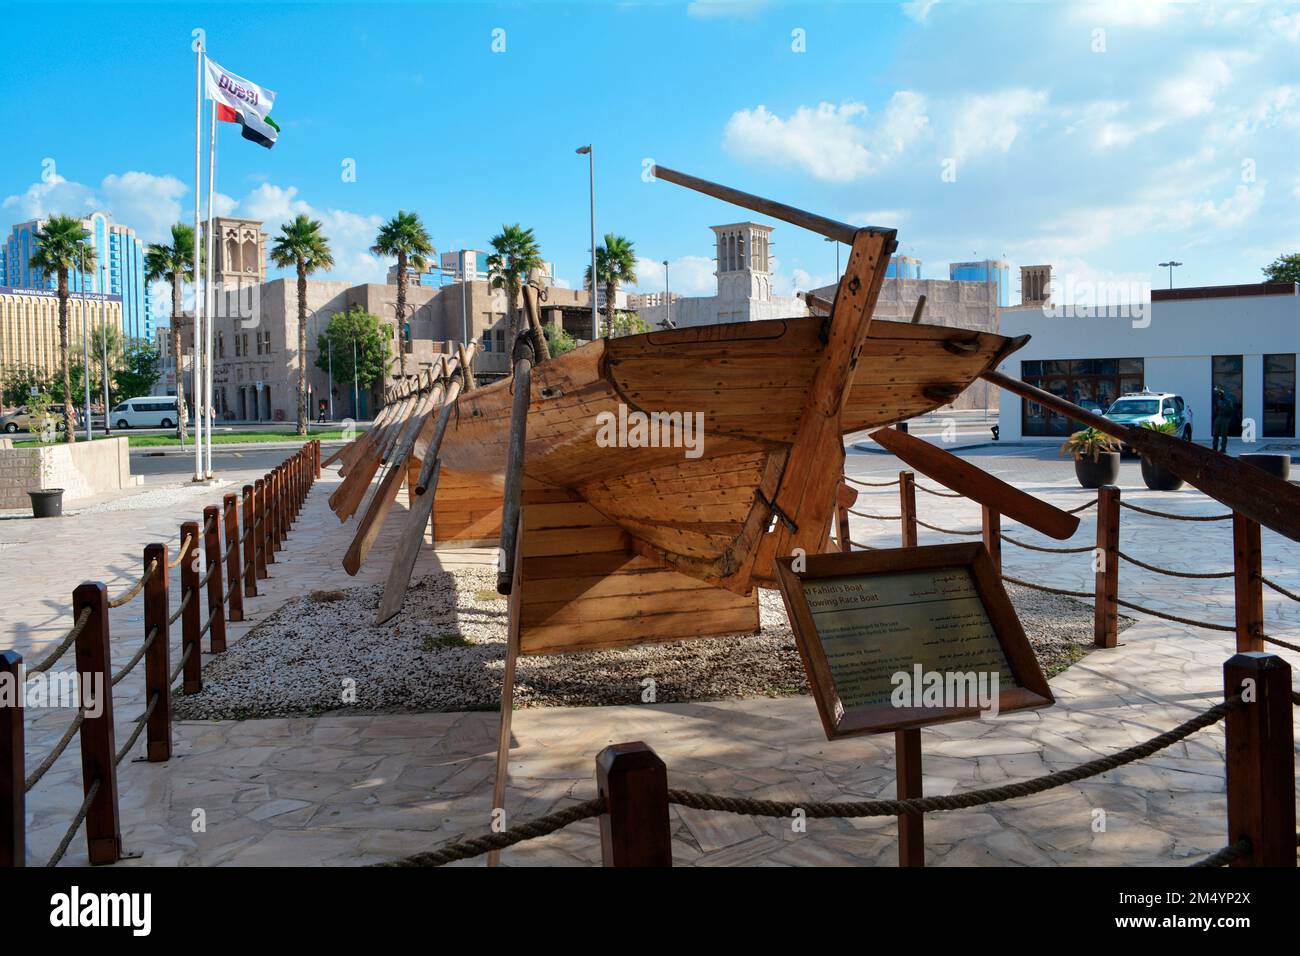 Dubai, Emirati Arabi Uniti (Emirati Arabi Uniti), dicembre 2022: La barca da corsa in legno di al Fahidi esposta nello storico quartiere di al Fahidi. Foto Stock